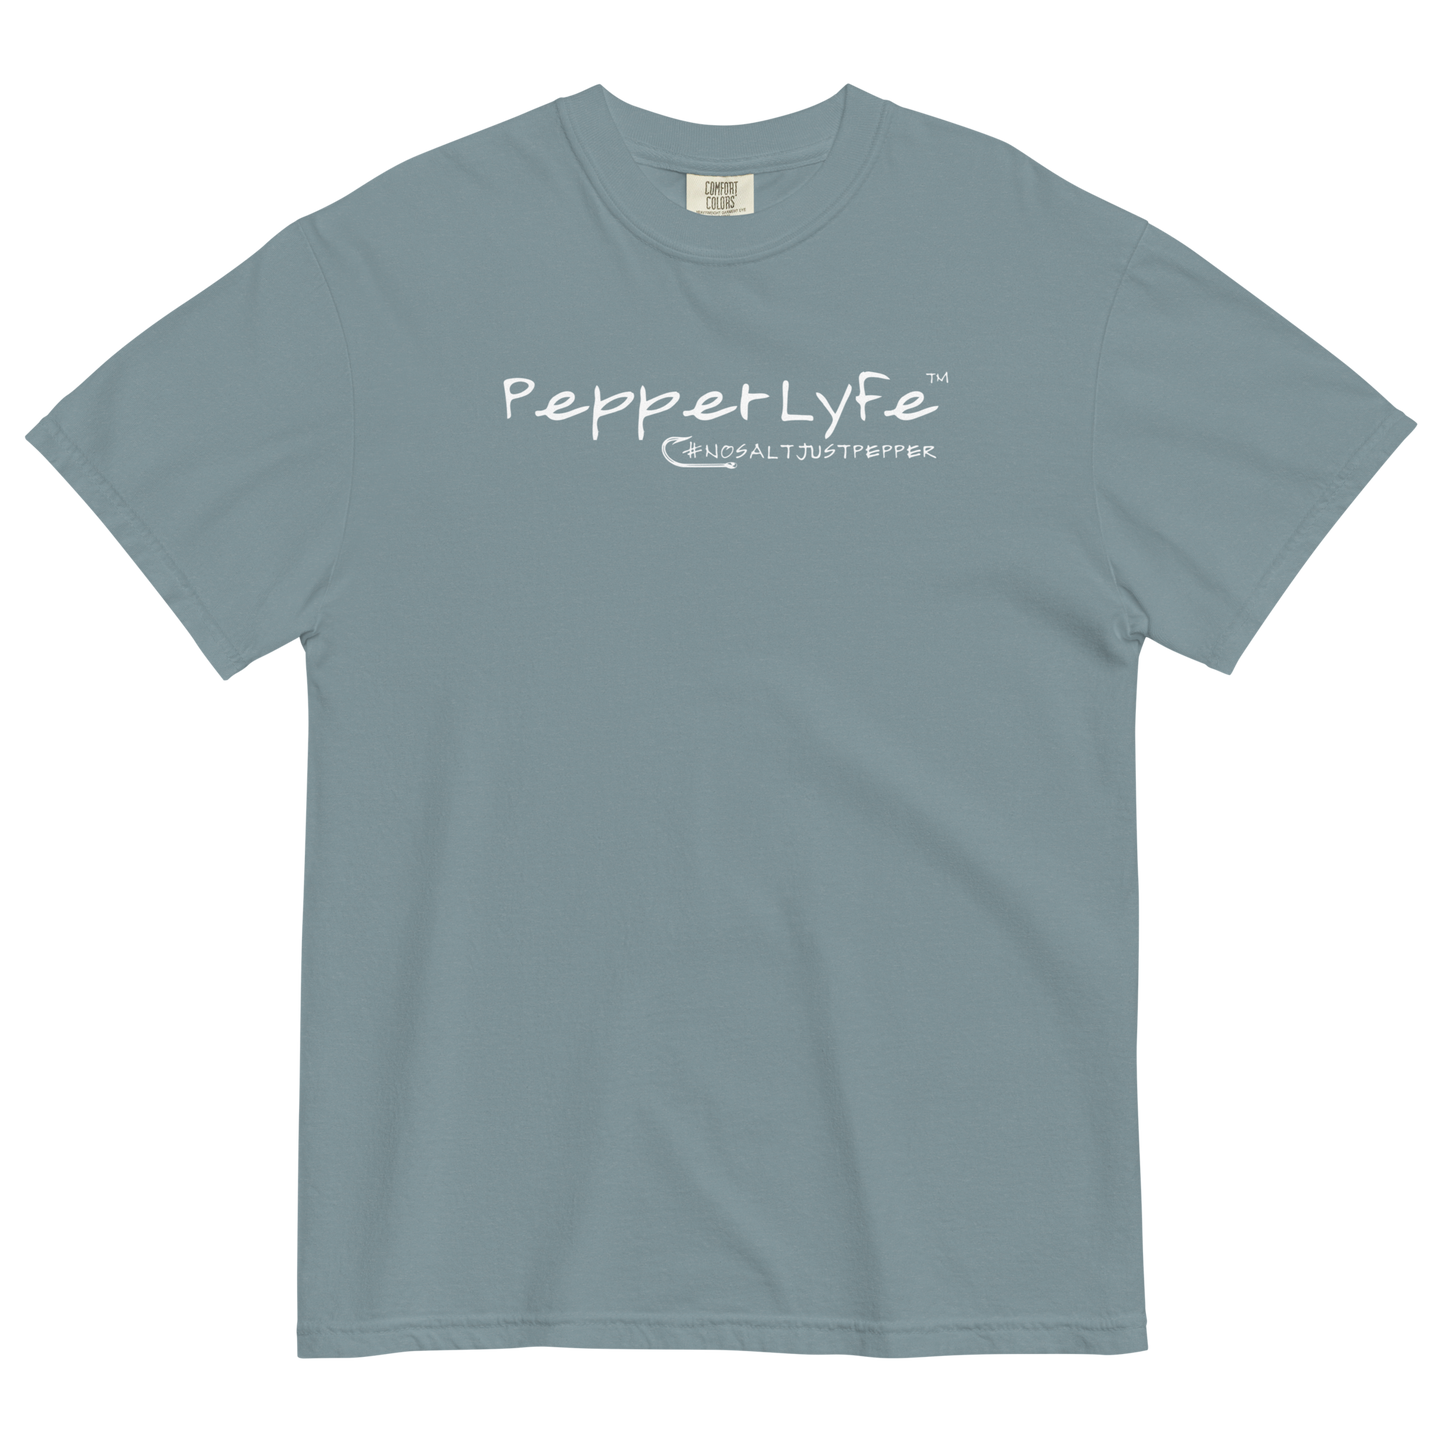 PepperLyfe #nosaltjustpepper T-Shirt - Comfort Colors